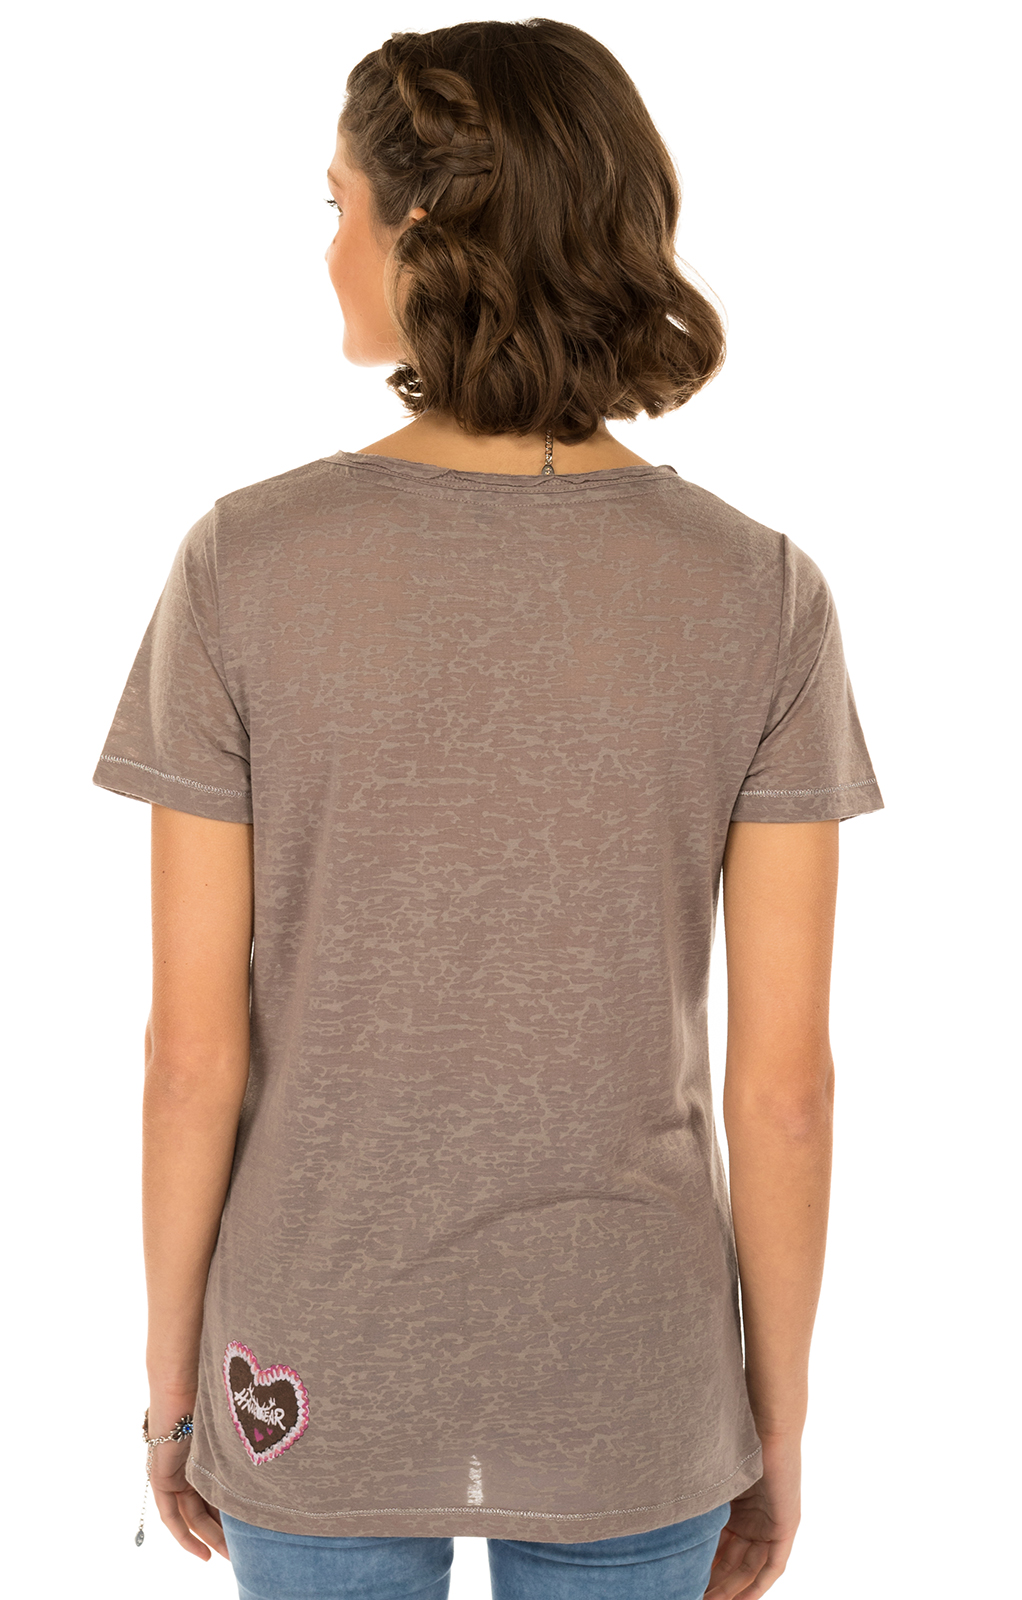 weitere Bilder von Klederdracht T - Shirt ANTARES bruin